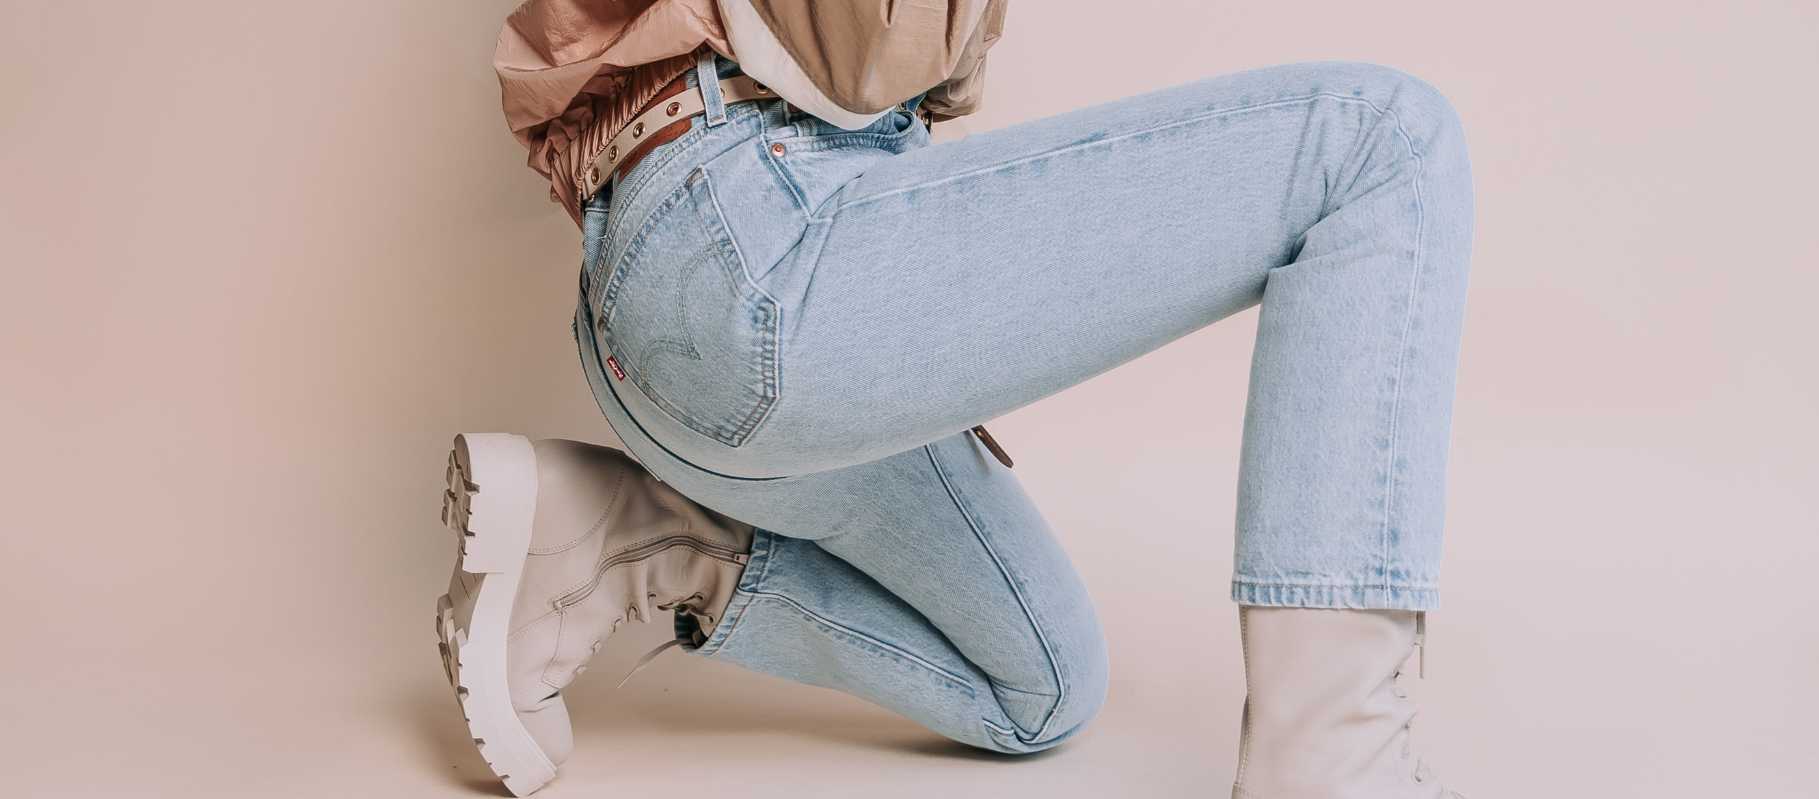 Tips om een broek te combineren - Fashion Blog